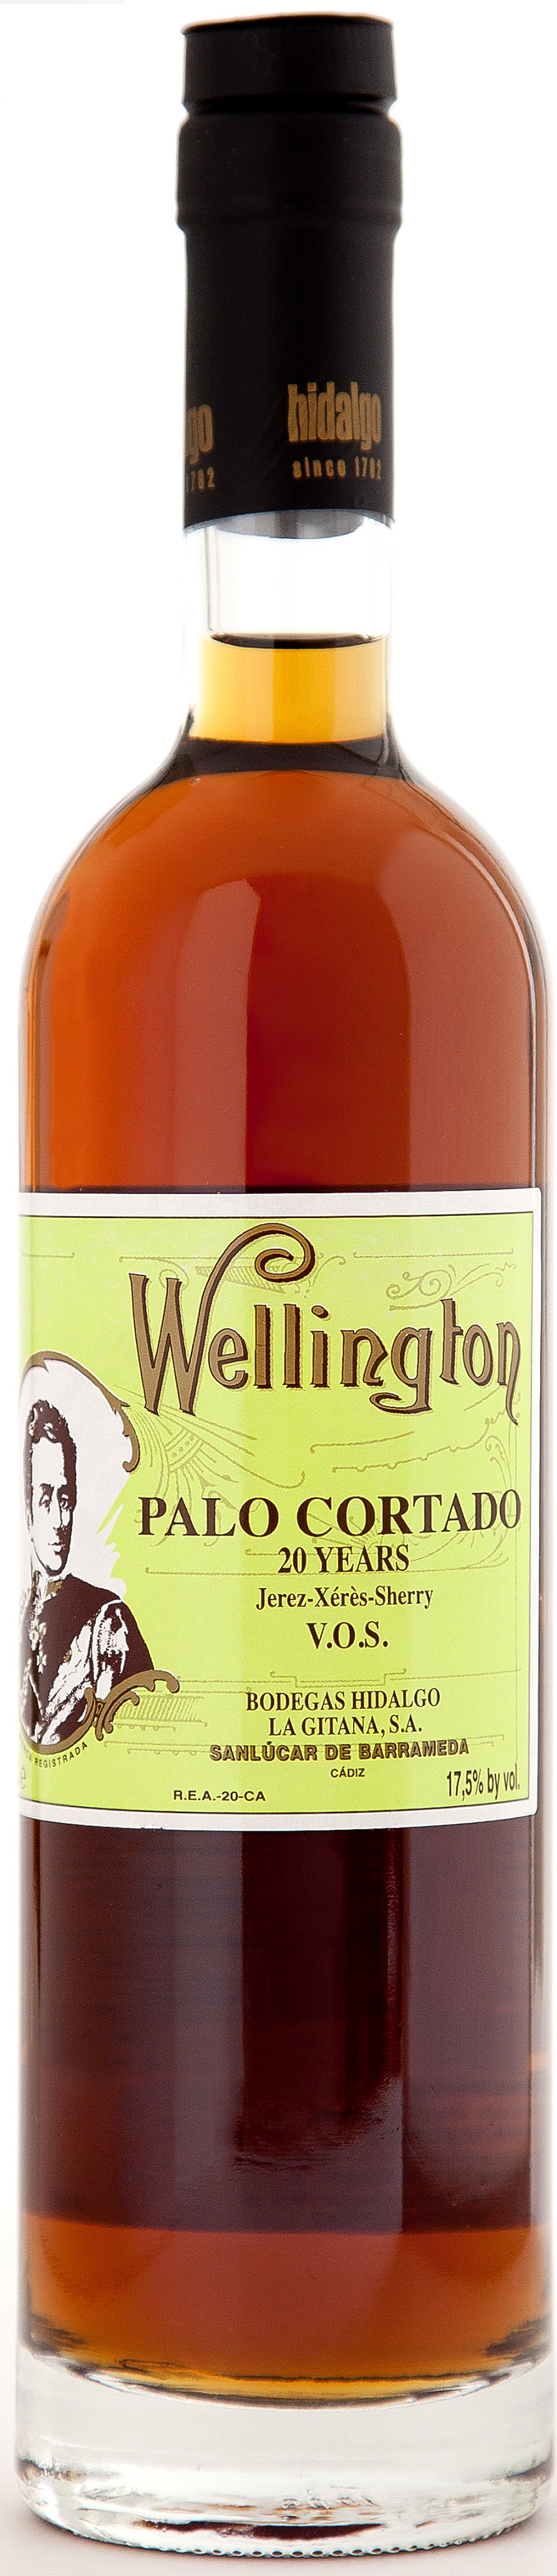 Bild von der Weinflasche Palo Cortado Wellington V.O.S.